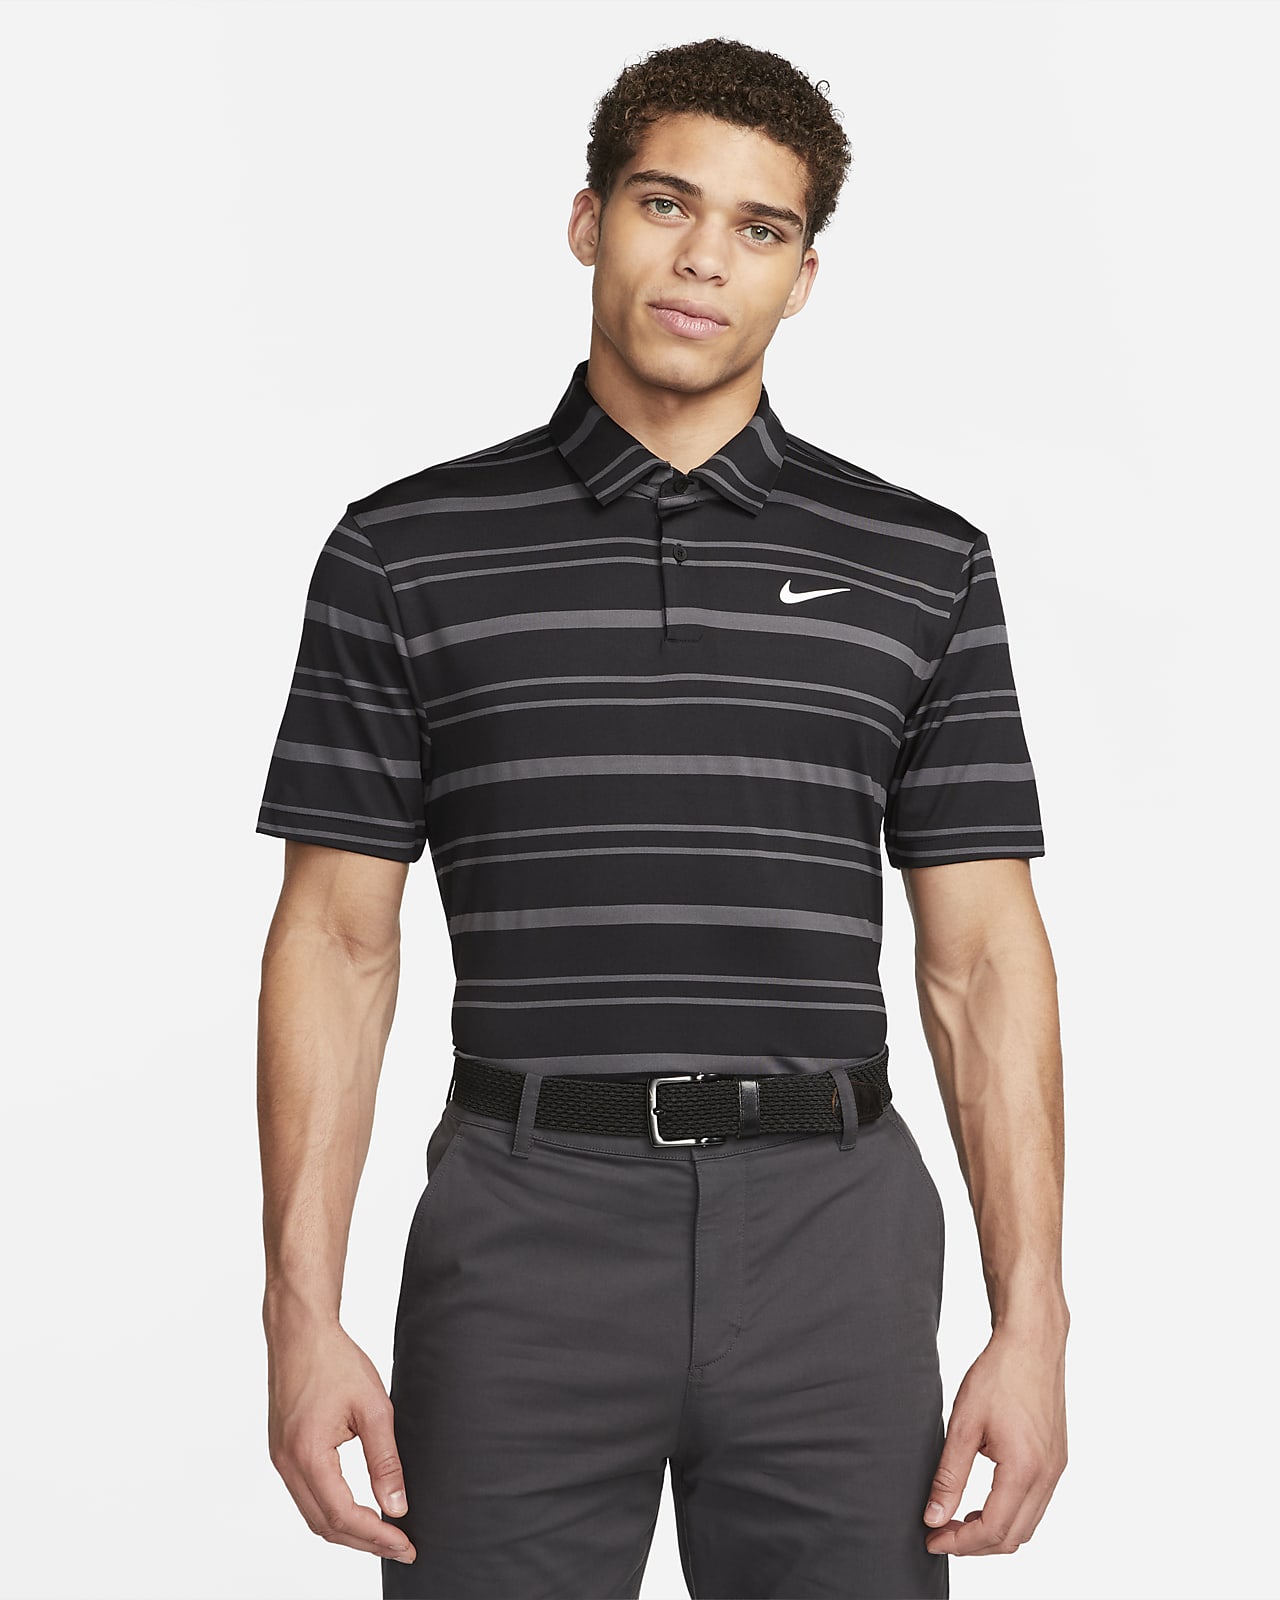 Nike Dri-FIT Tour Men's Striped Golf Polo